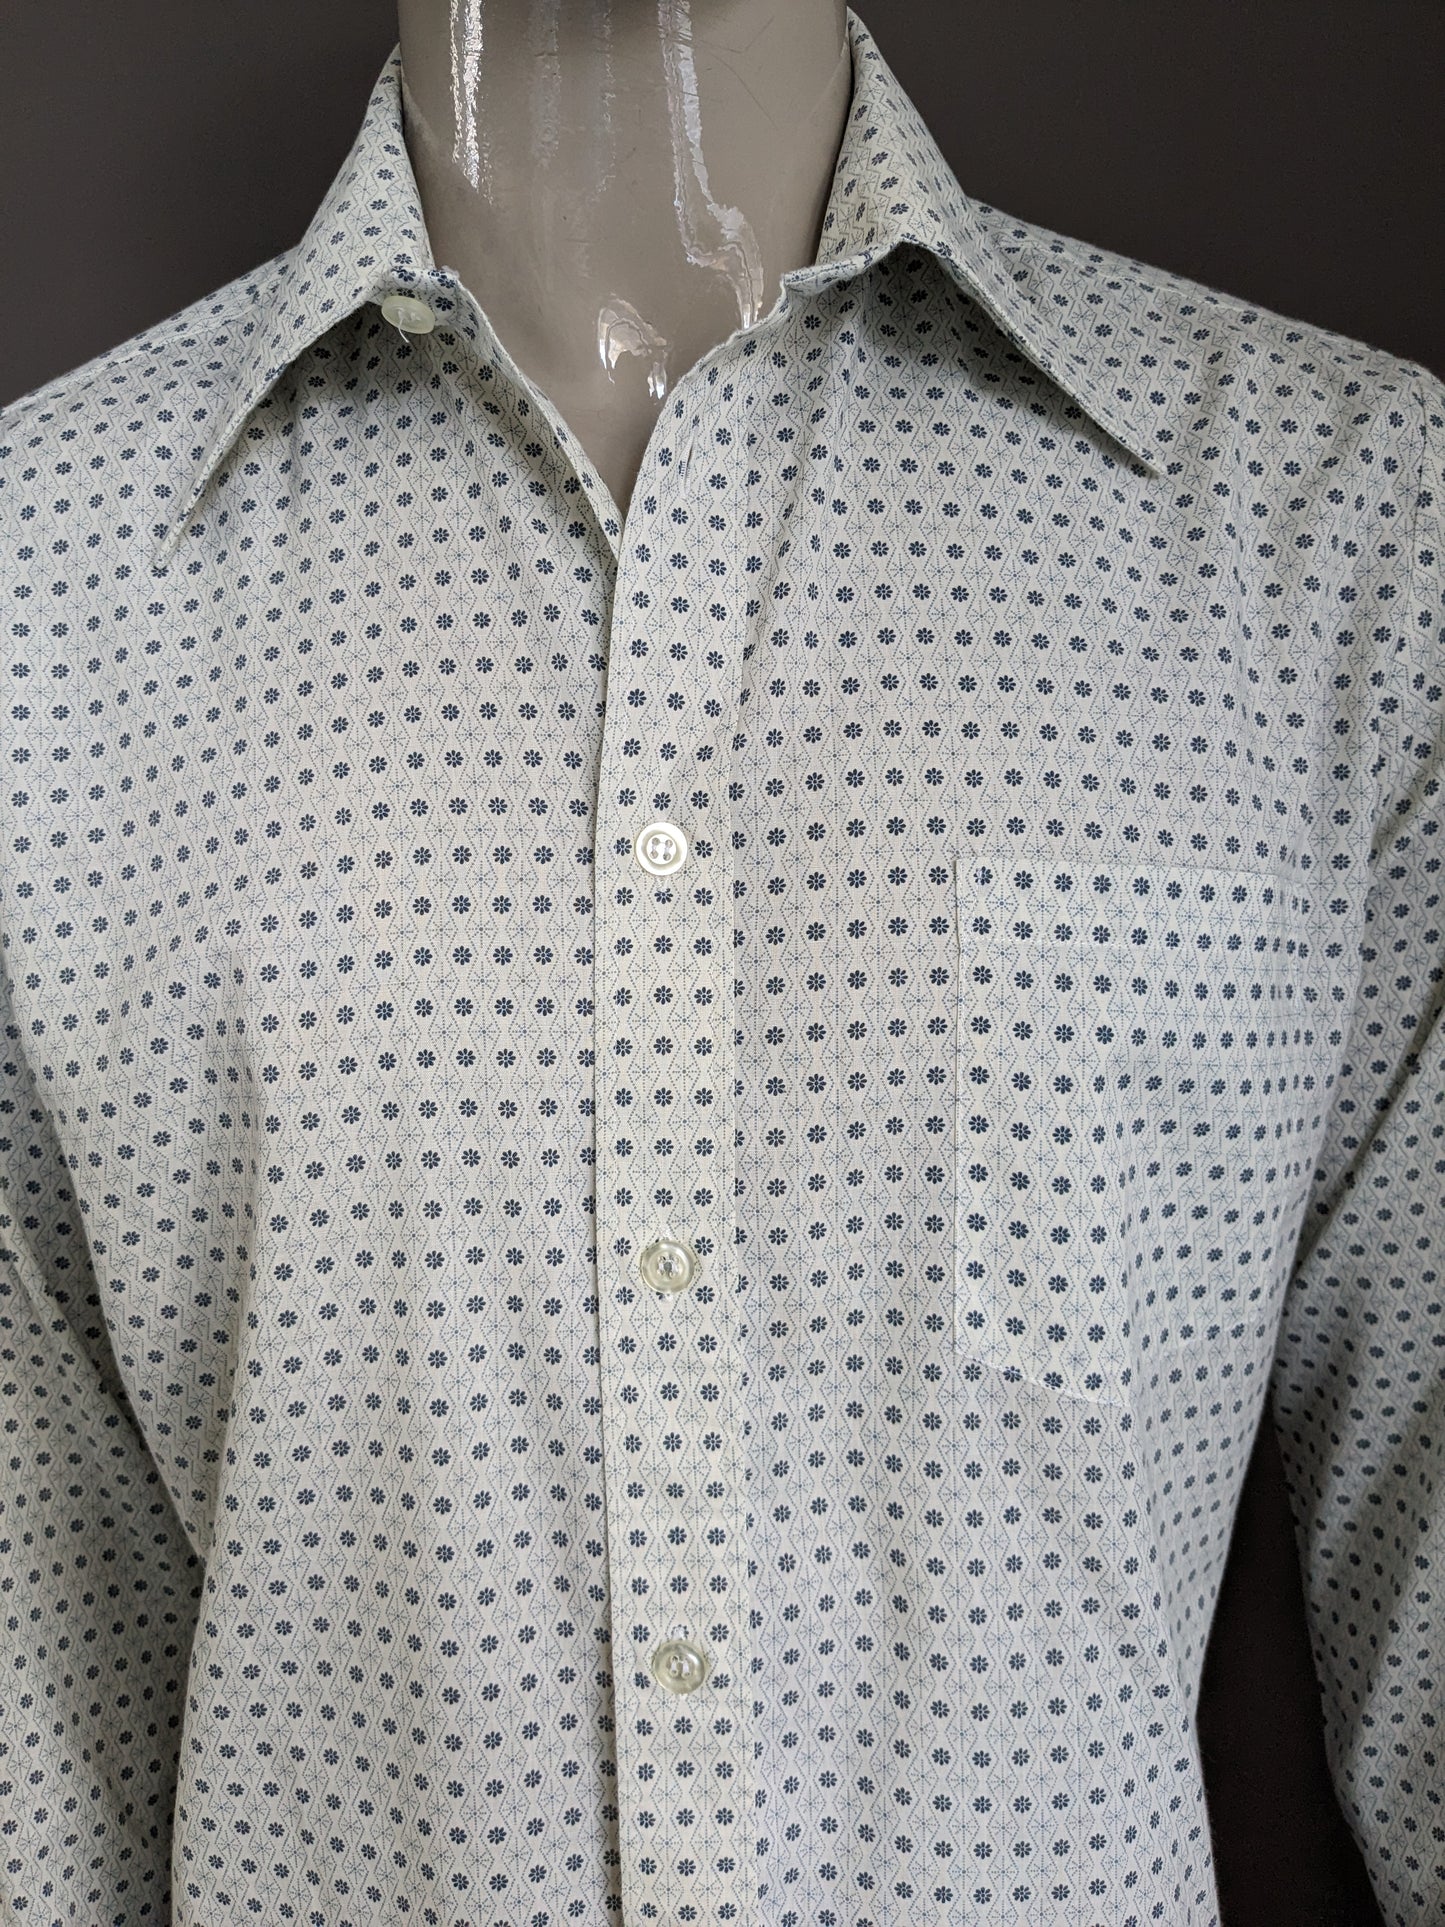 Camicia vintage Fabio degli anni '70 con collare punti. Floreale grigio beige. Taglia XL.